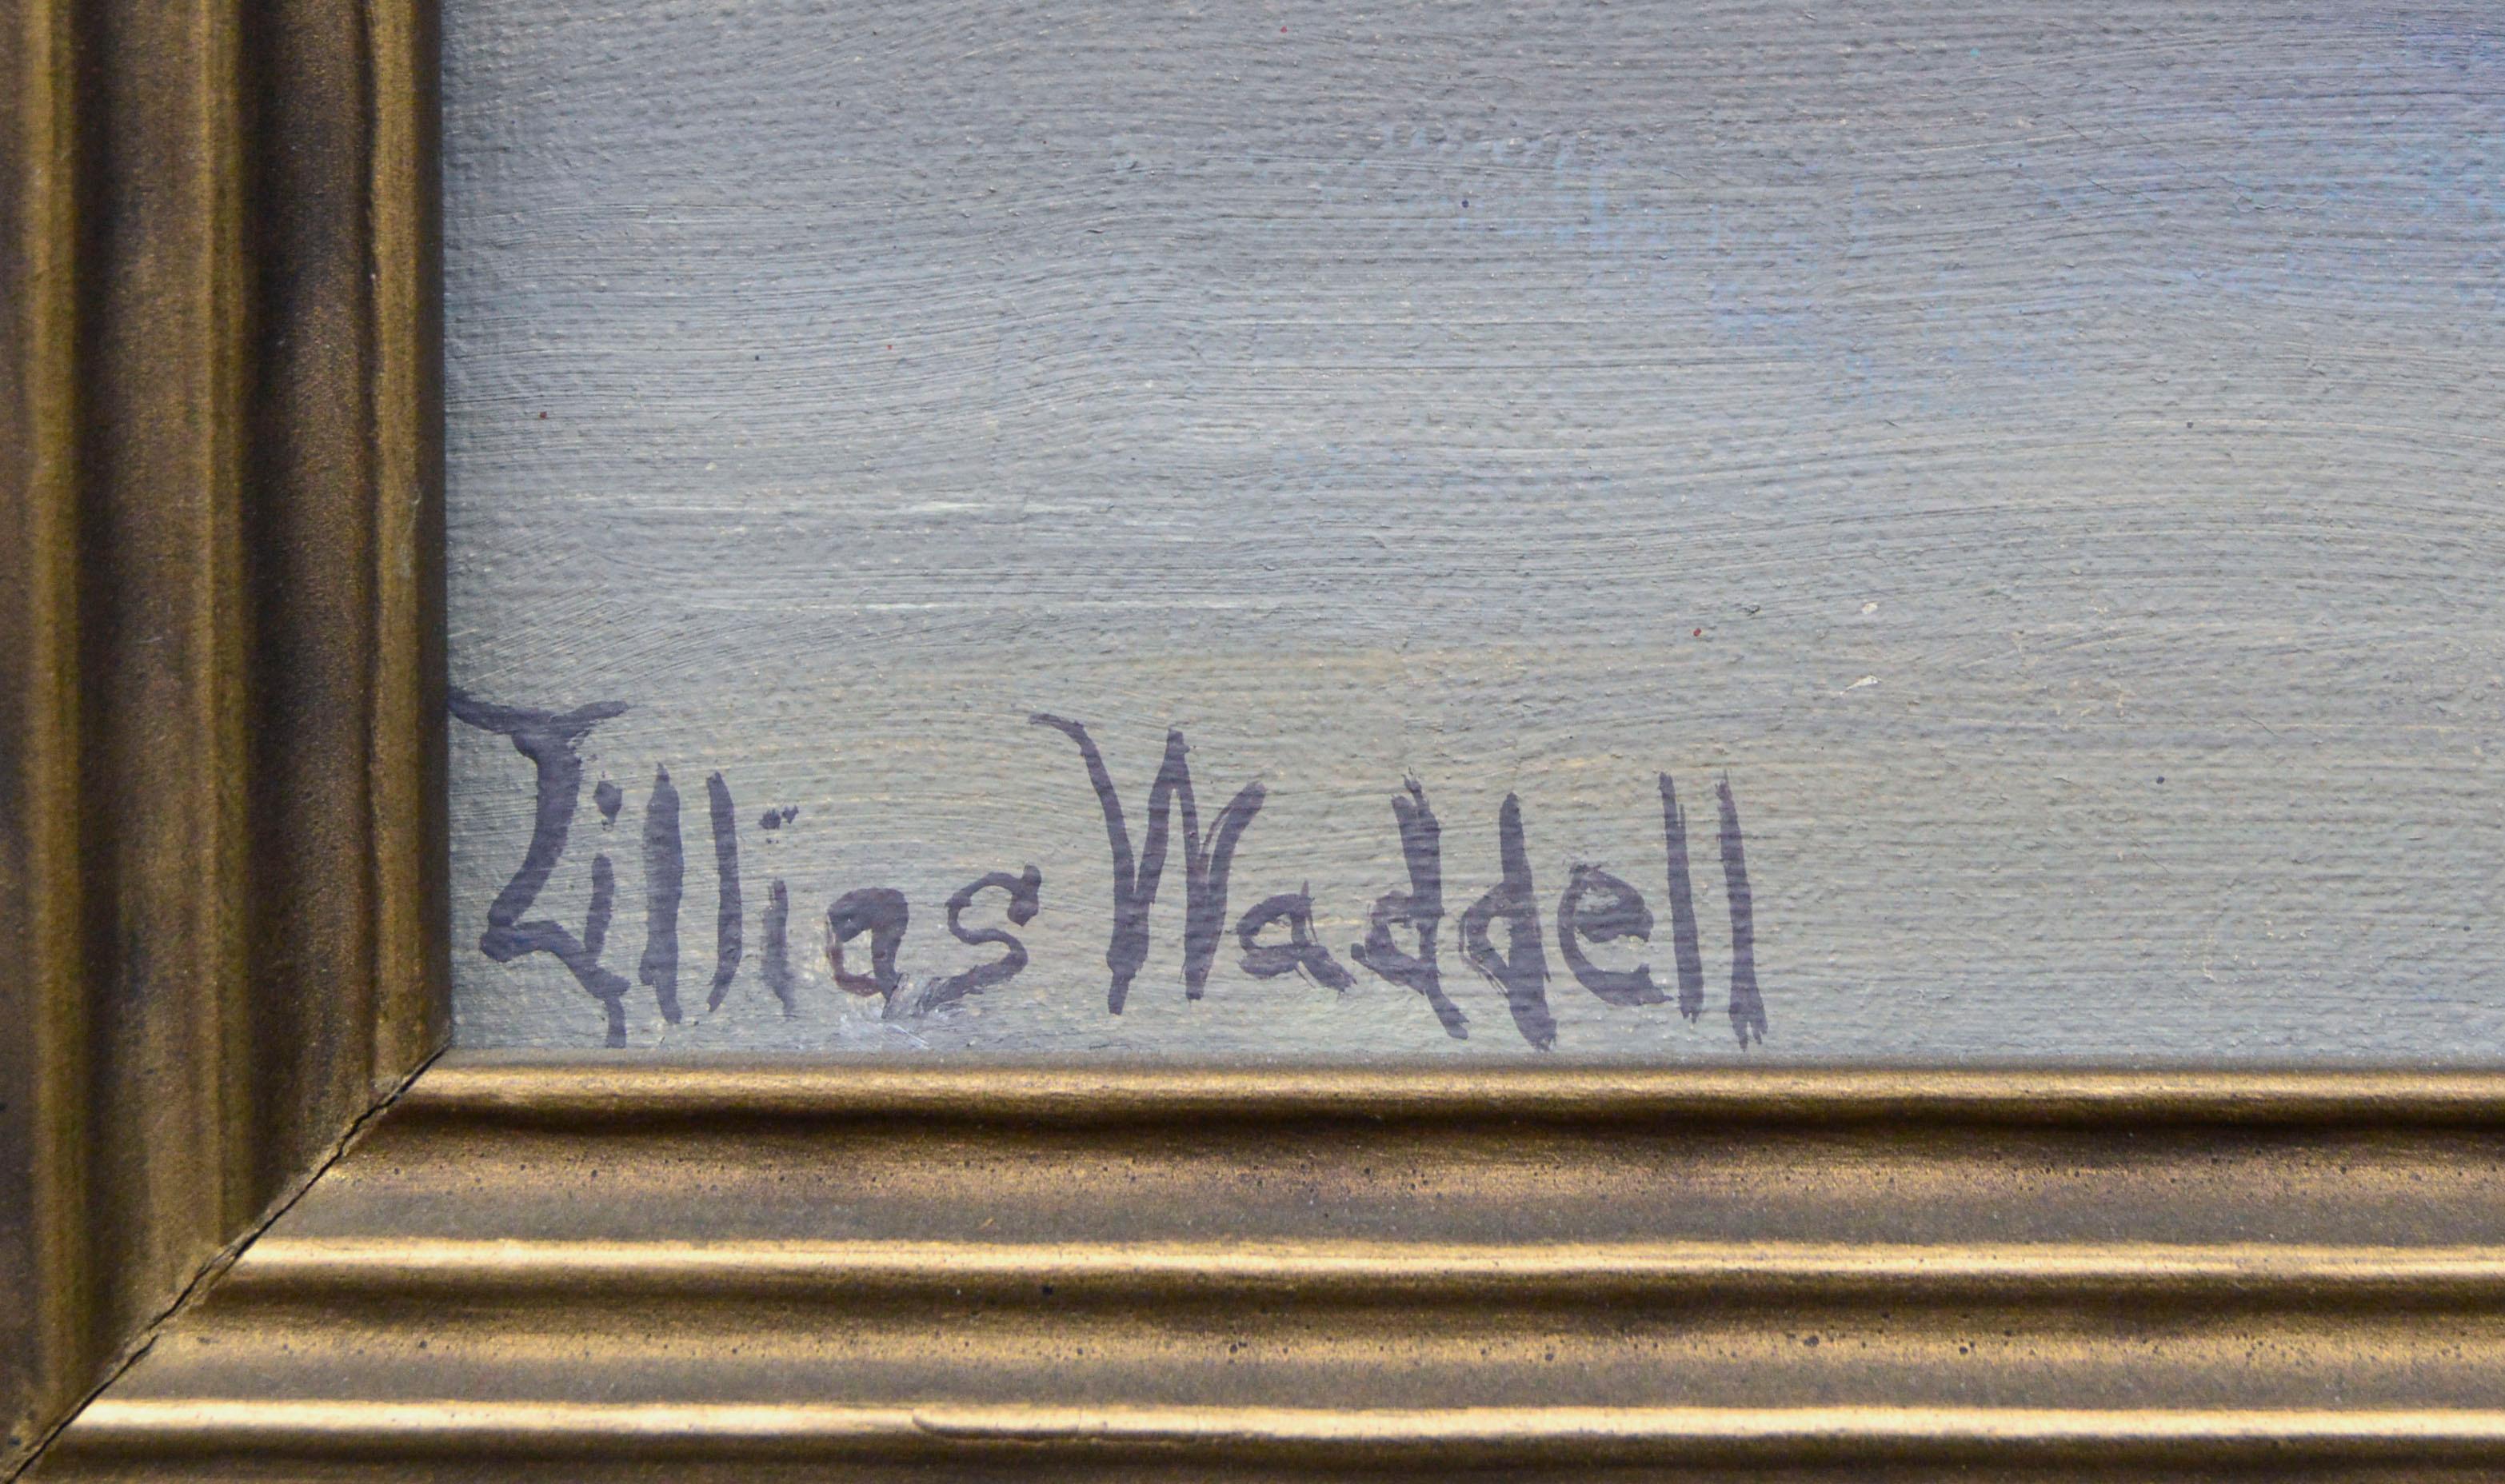 lillias waddell